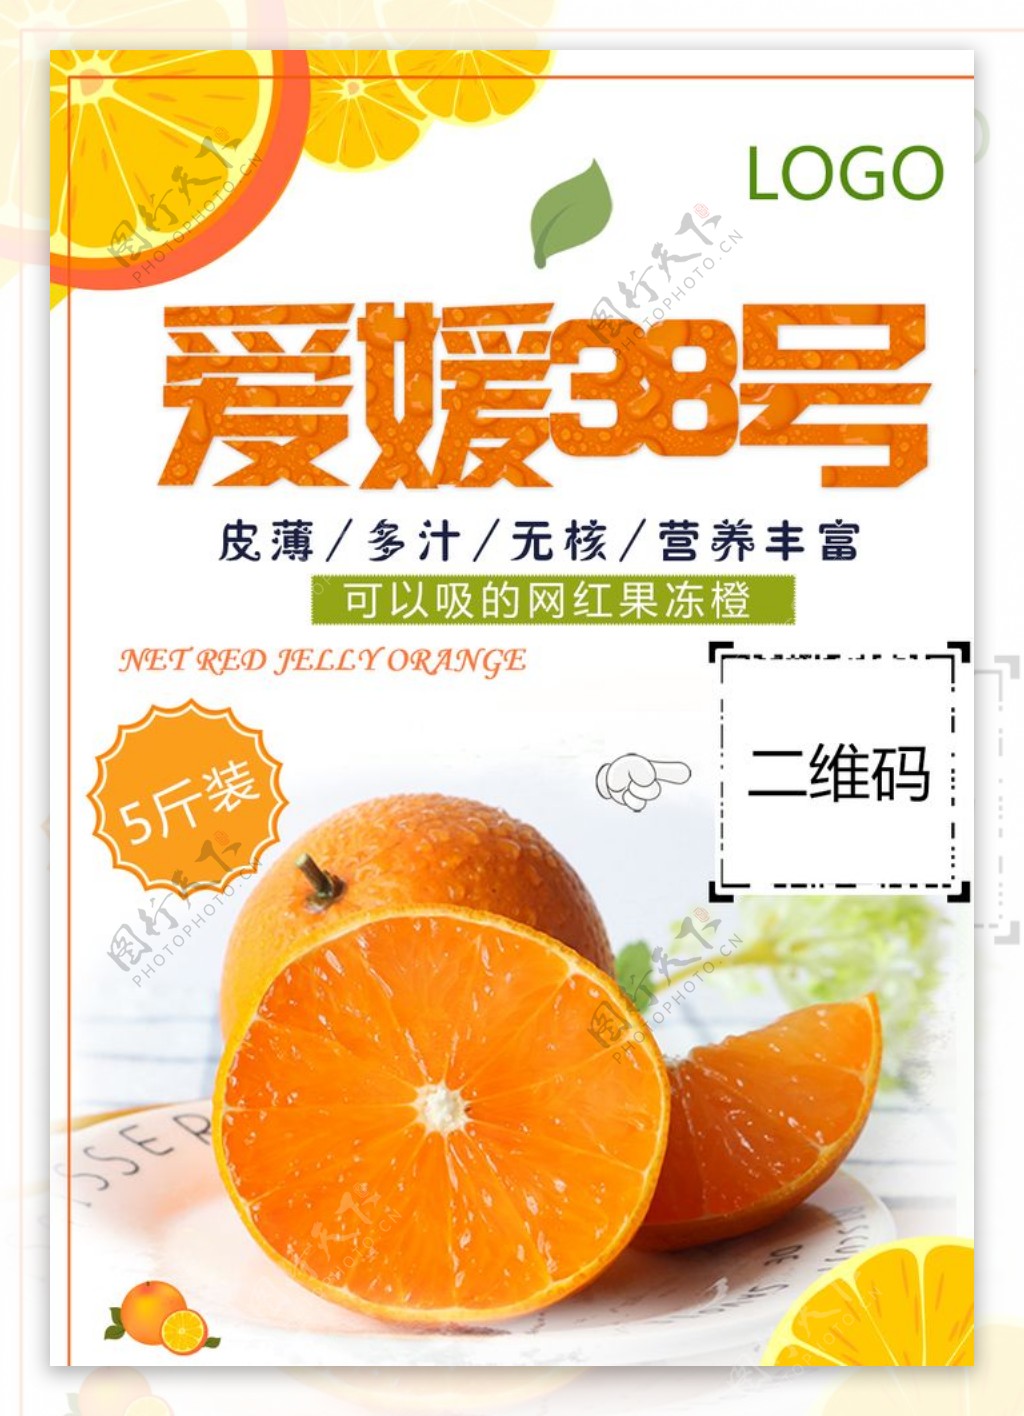 爱媛38号果冻橙海报